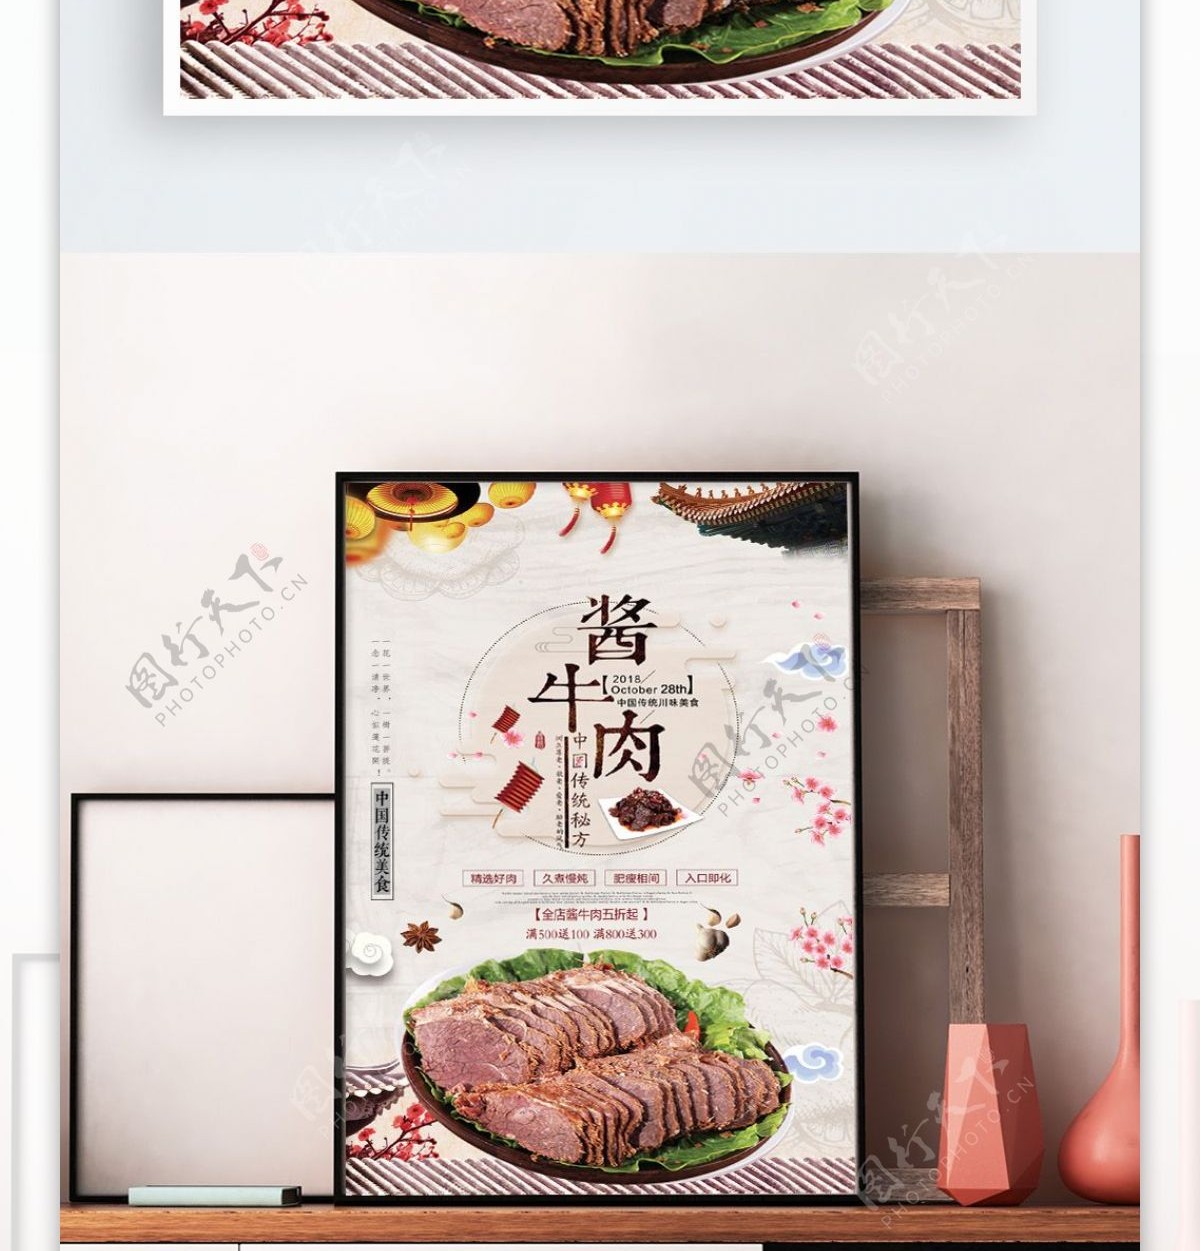 酱牛肉中国风美食海报背景素材